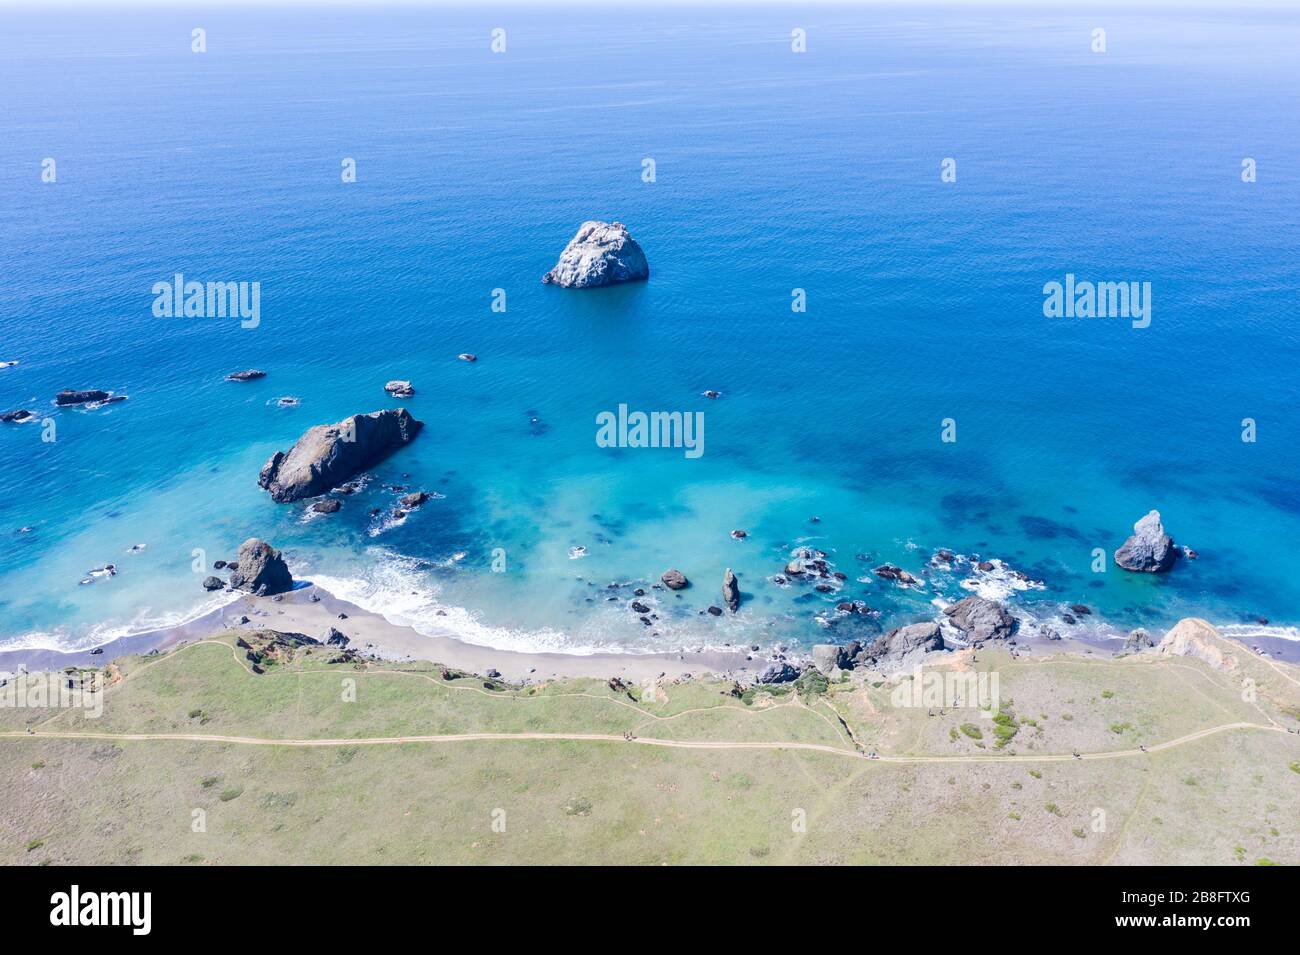 Der scheinbar friedliche Pazifische Ozean weht gegen die felsige Nordkalifornische Küste. Dieses wilde Gebiet hat eine inspirierend zerklüftete Landschaft. Stockfoto